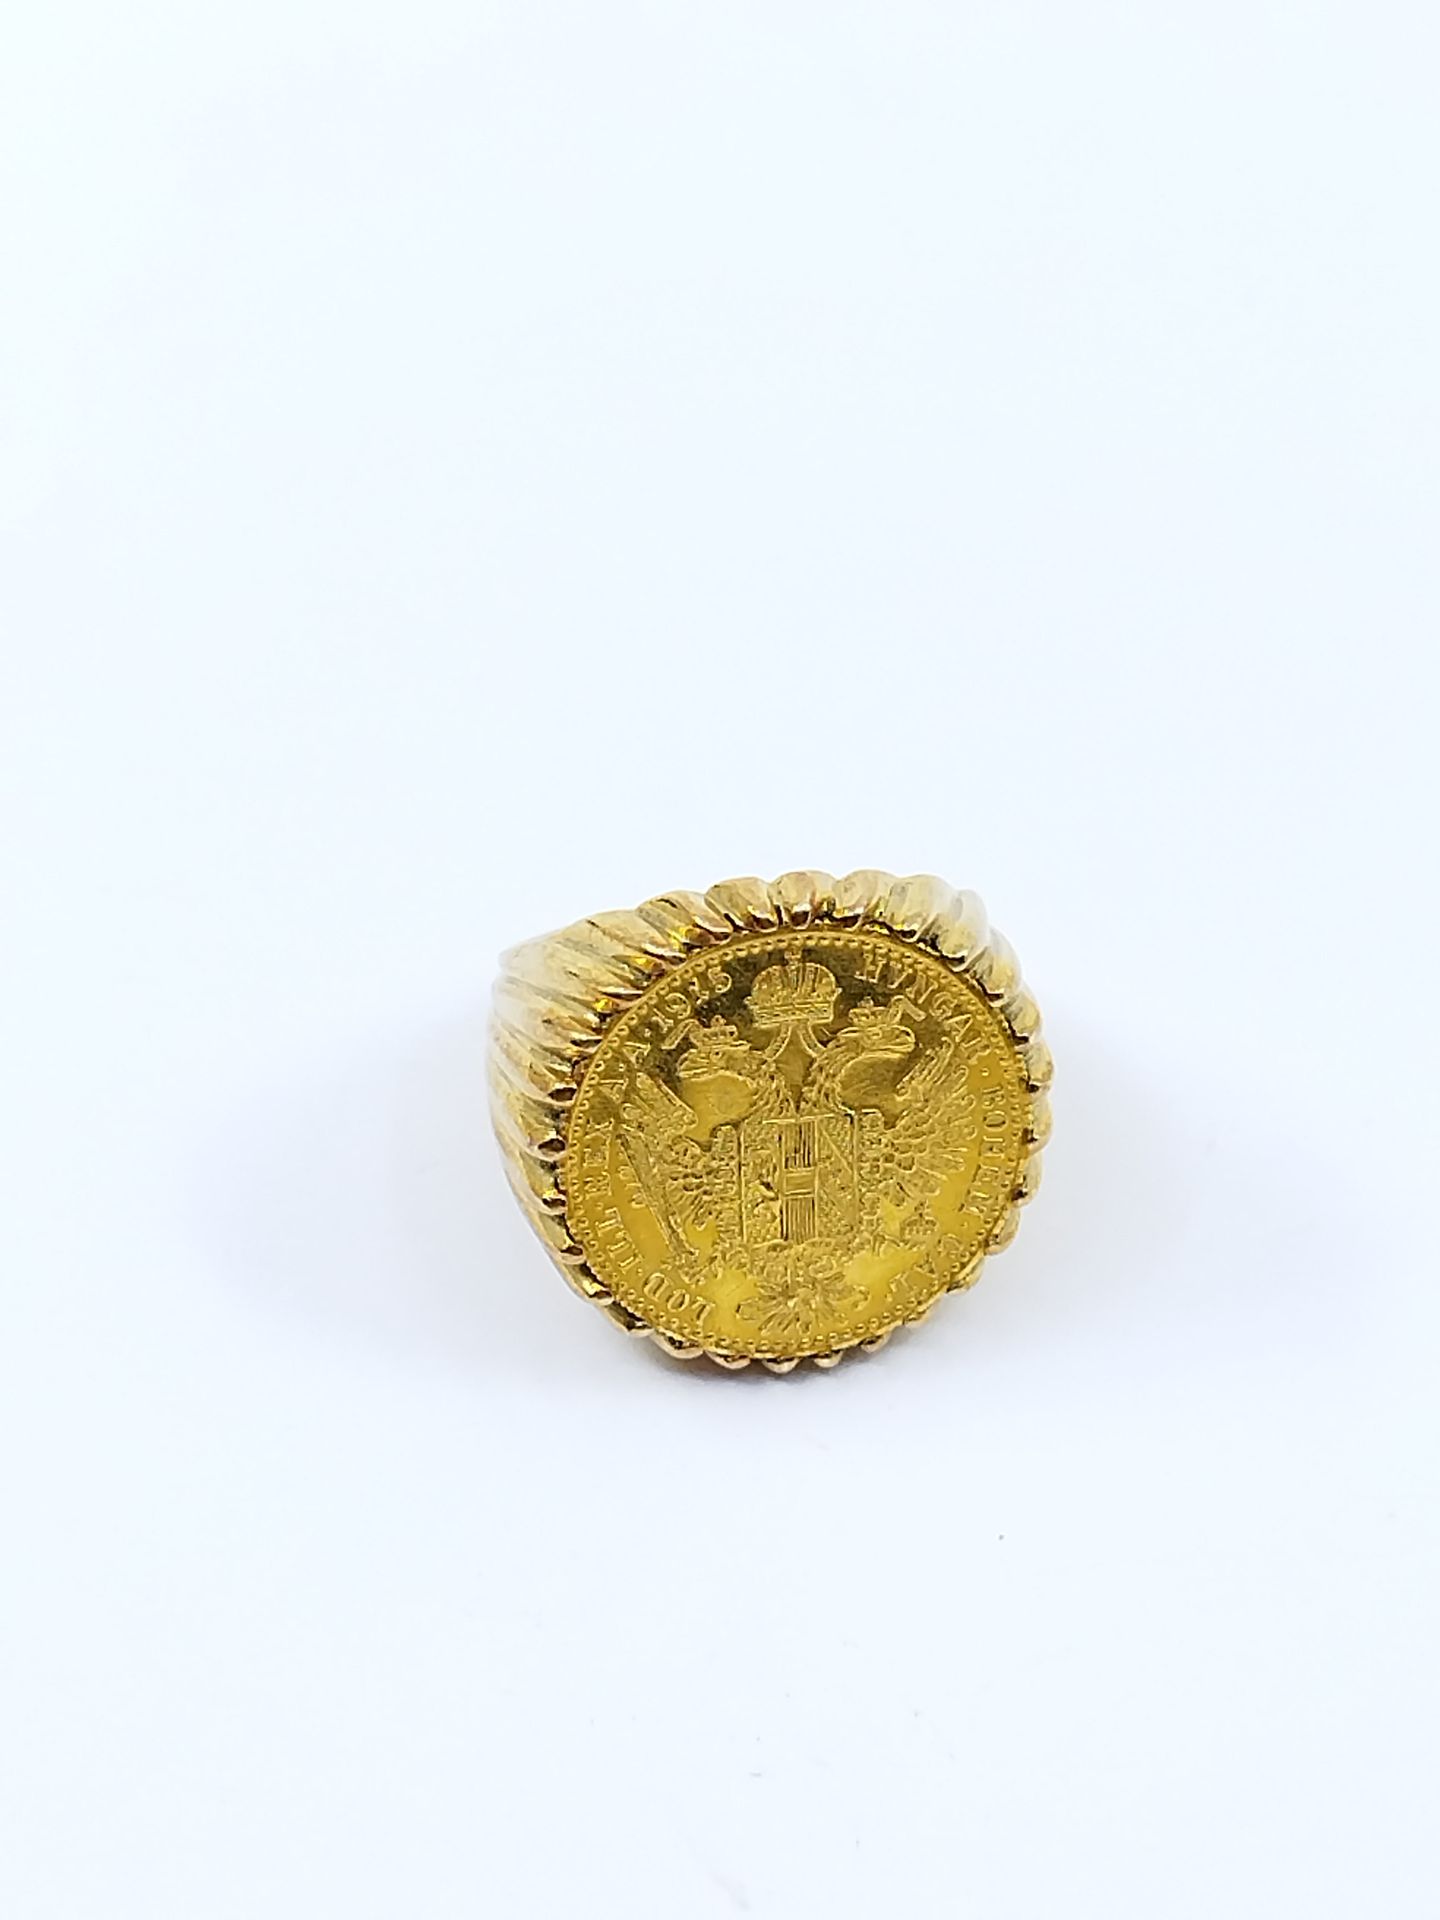 Null CHEVALIERE PIEZA ducado de Autriche en oro amarillo 750°.

Peso : 11,73 g

&hellip;